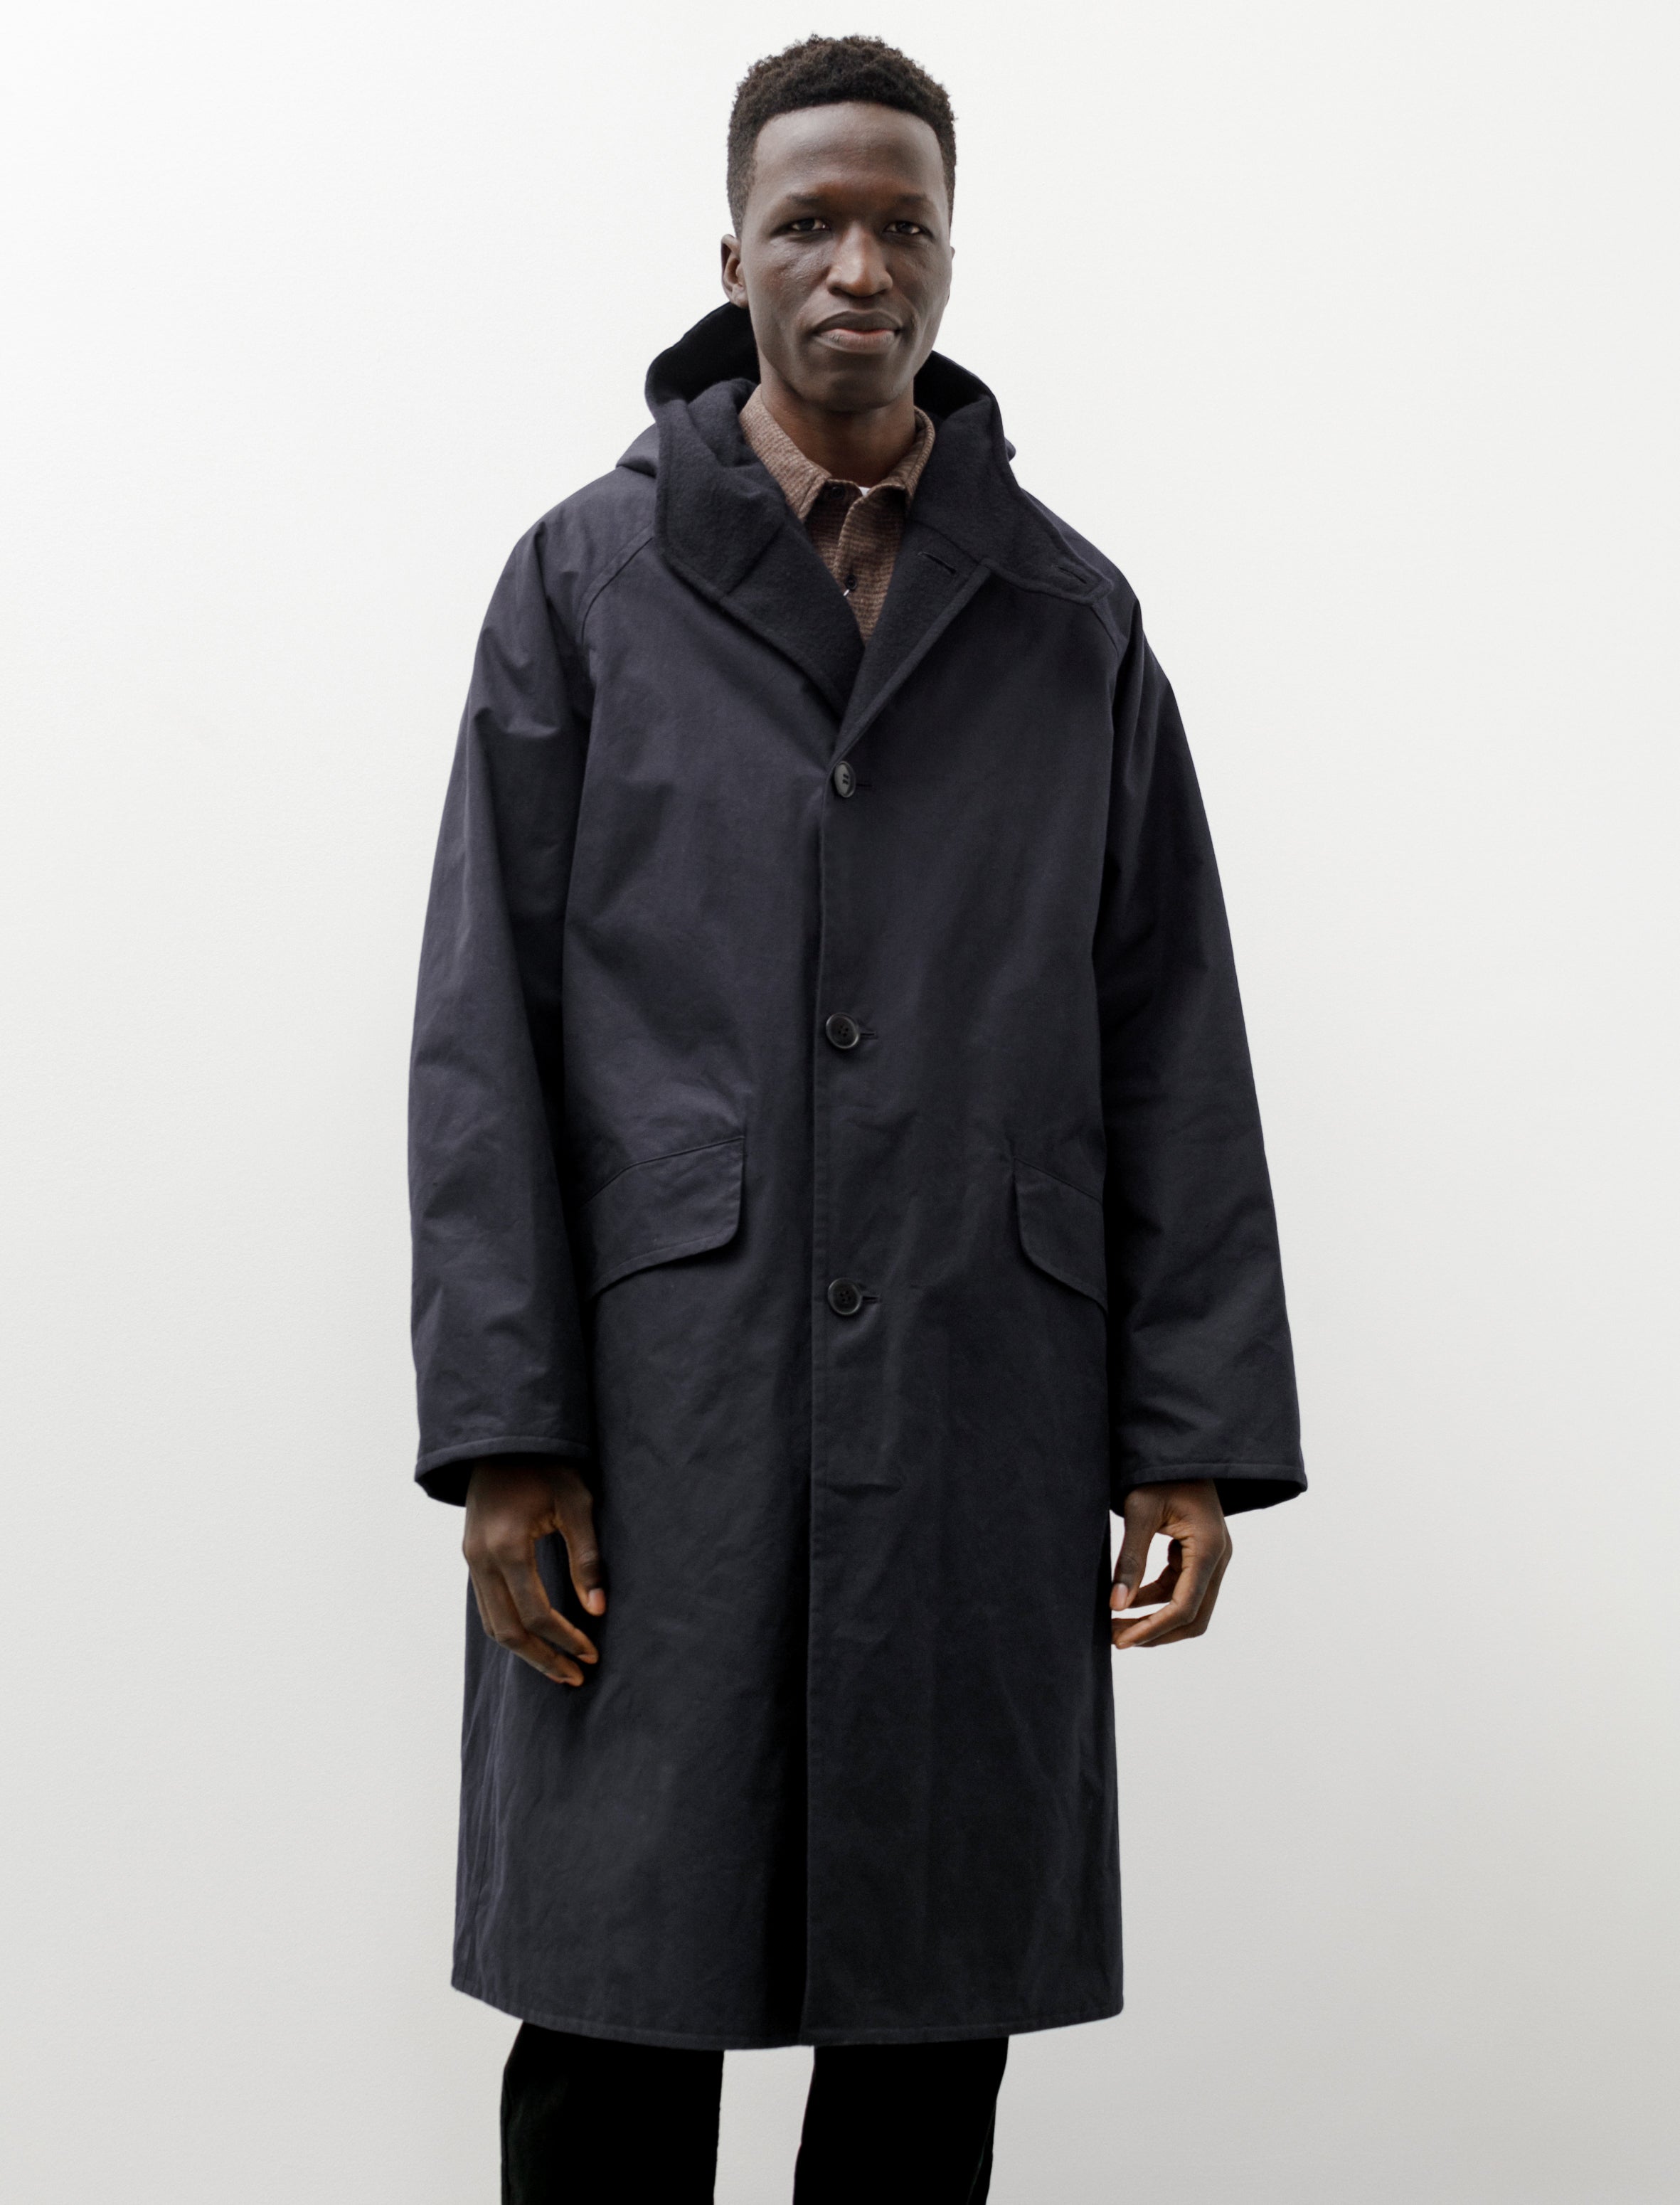 17500円安い アウトレット販売 メーカー直配送 COMOLI hooded coat